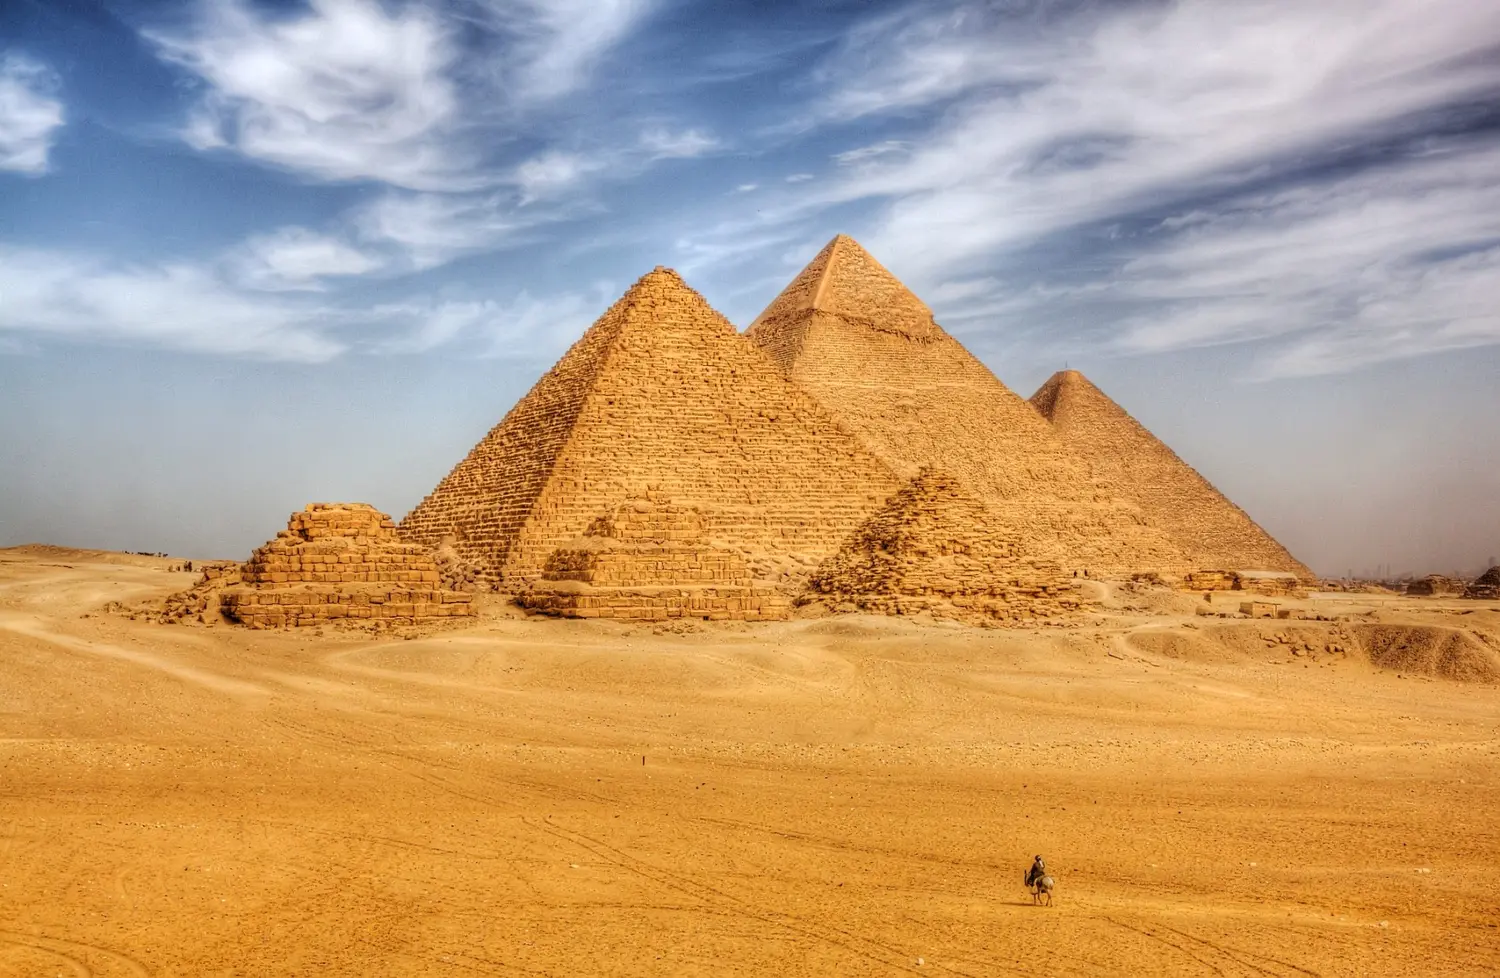  The Pyramids at Giza